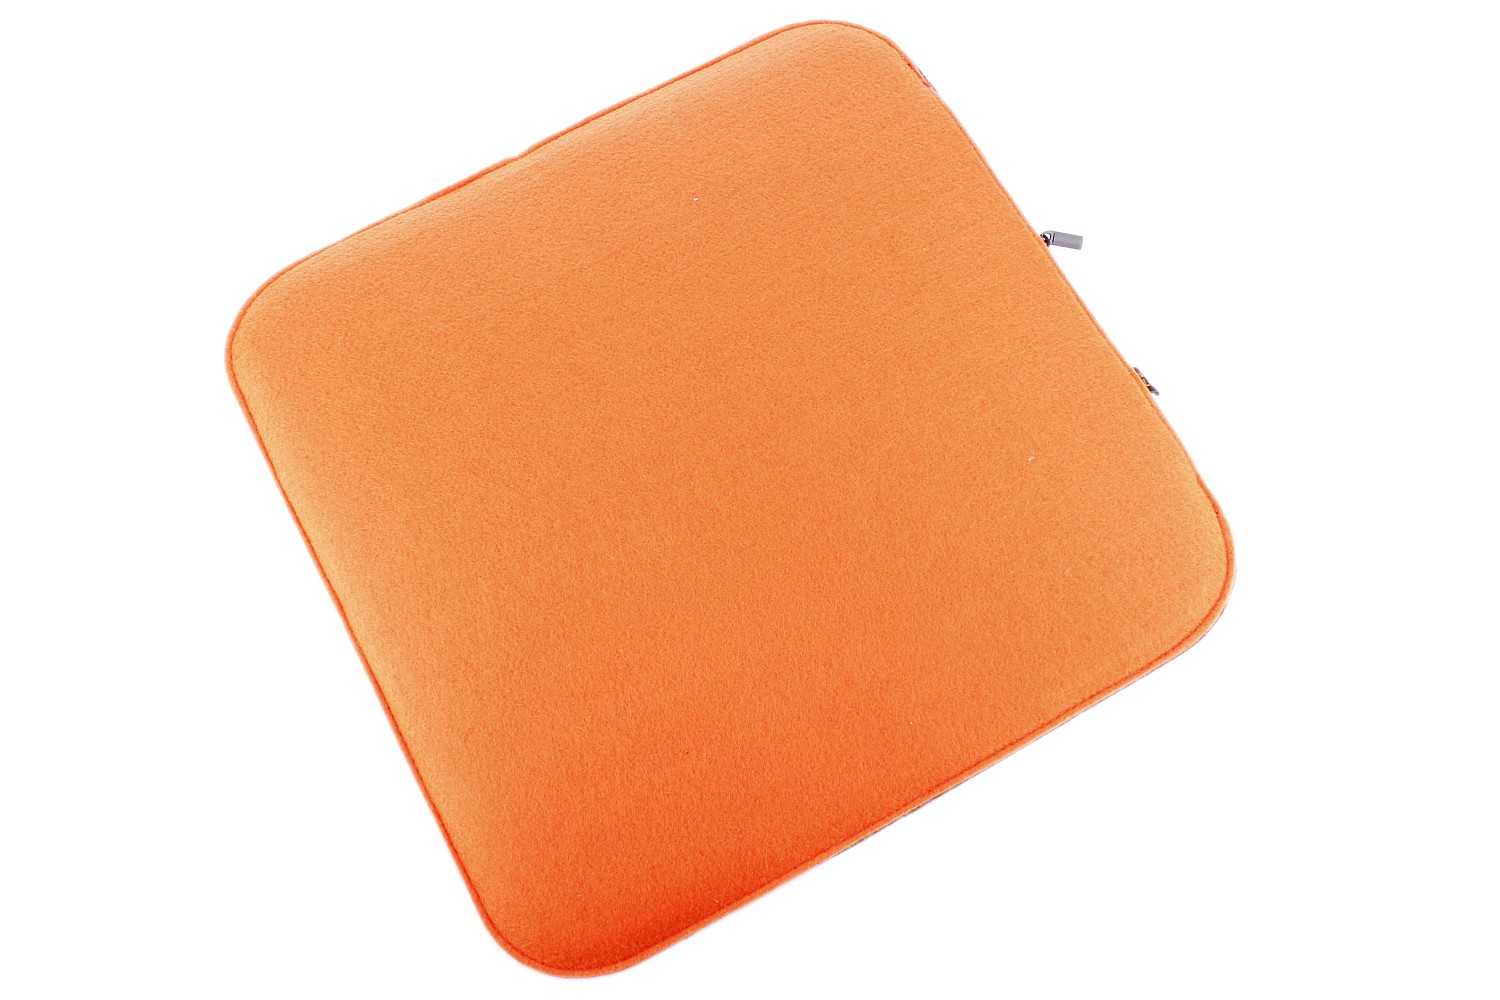 Filz Sitzkissen 2 farbig zum Wenden in orange und dunkelgrau (LX1826)